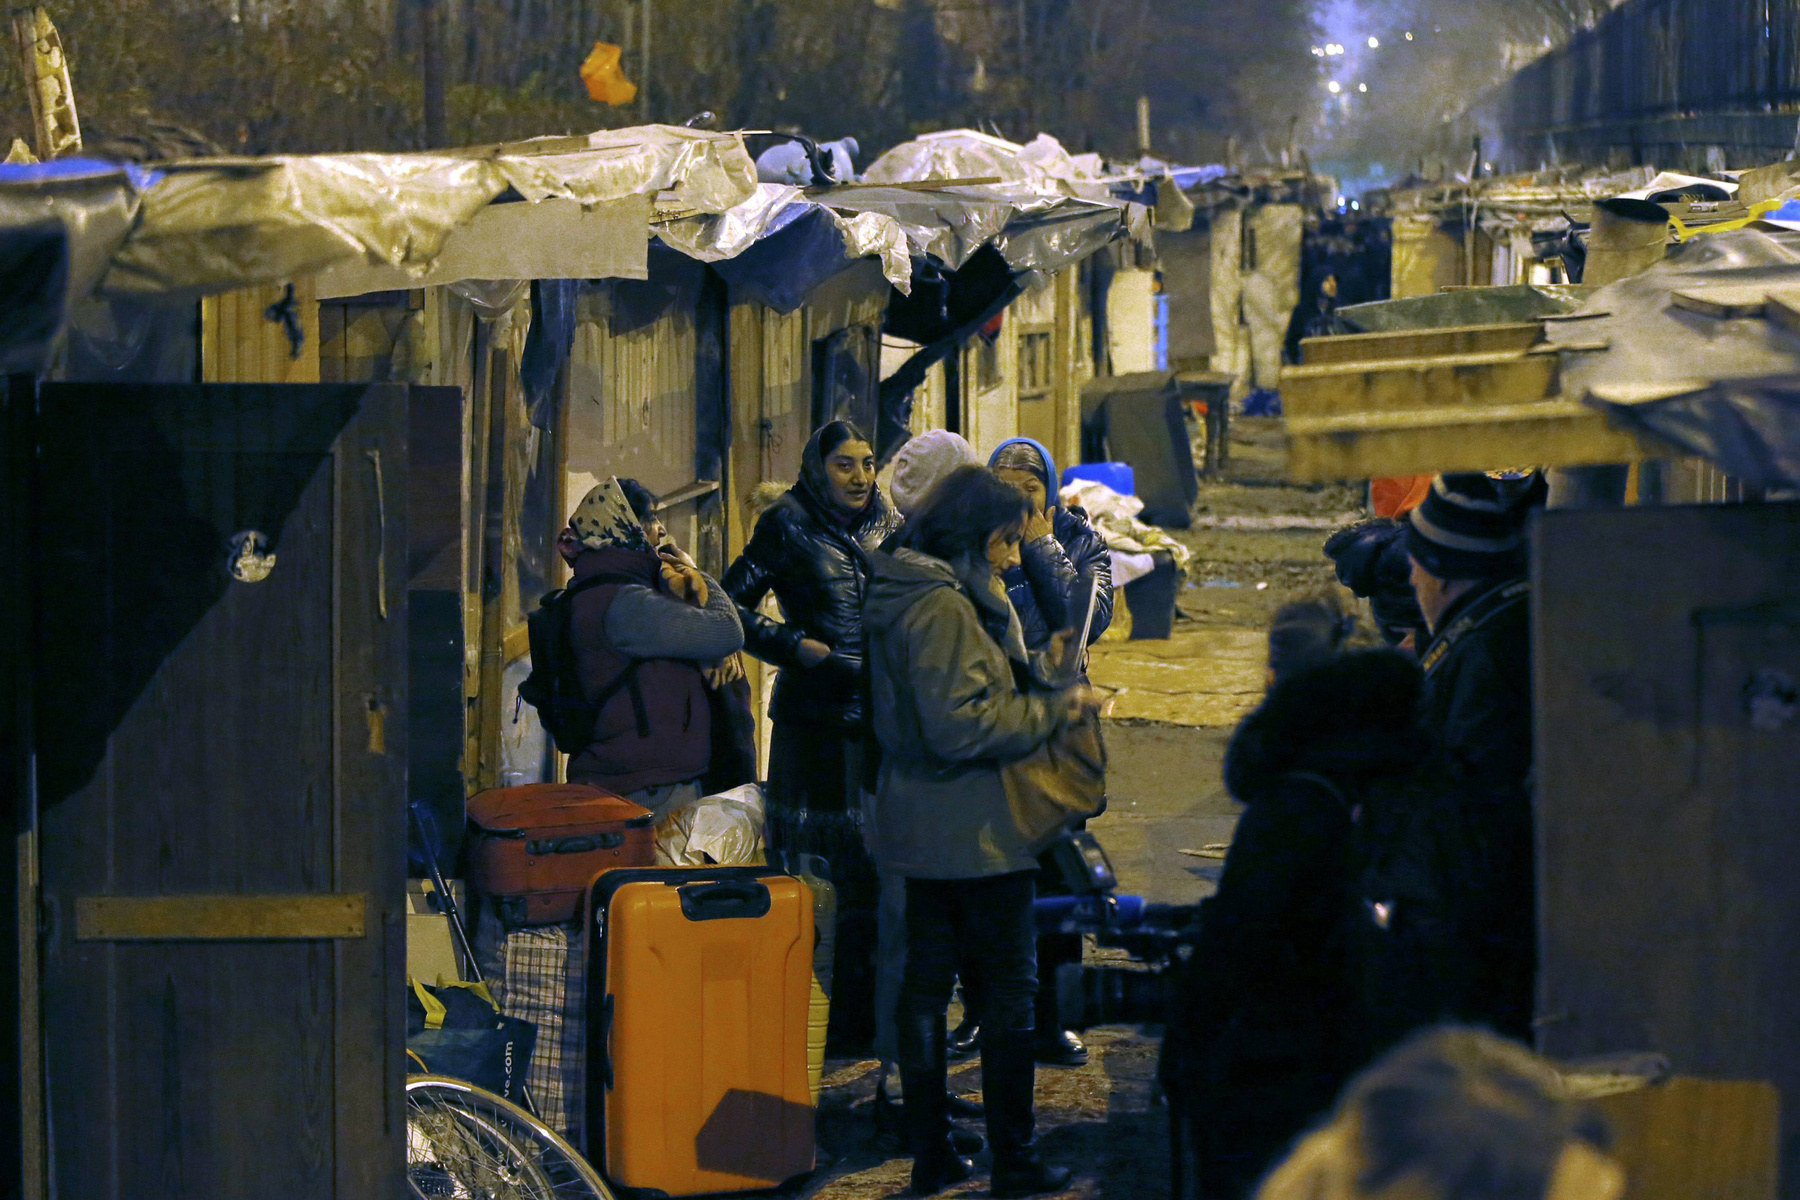 Az Amnesty tiltakozott a bírósági döntés ellen, mivel az semmilyen megfelelő lakhatási megoldást nem javasol. Hasonló kifogással éltek a jogvédők a tavaly kilakoltatott összesen 11 ezer romániai és bolgár romával kapcsolatban, mivel a hatóságok egyetlen csoportnak sem biztosítottak elhelyezkedési lehetőséget, csak kipaterolták őket táboraikból.